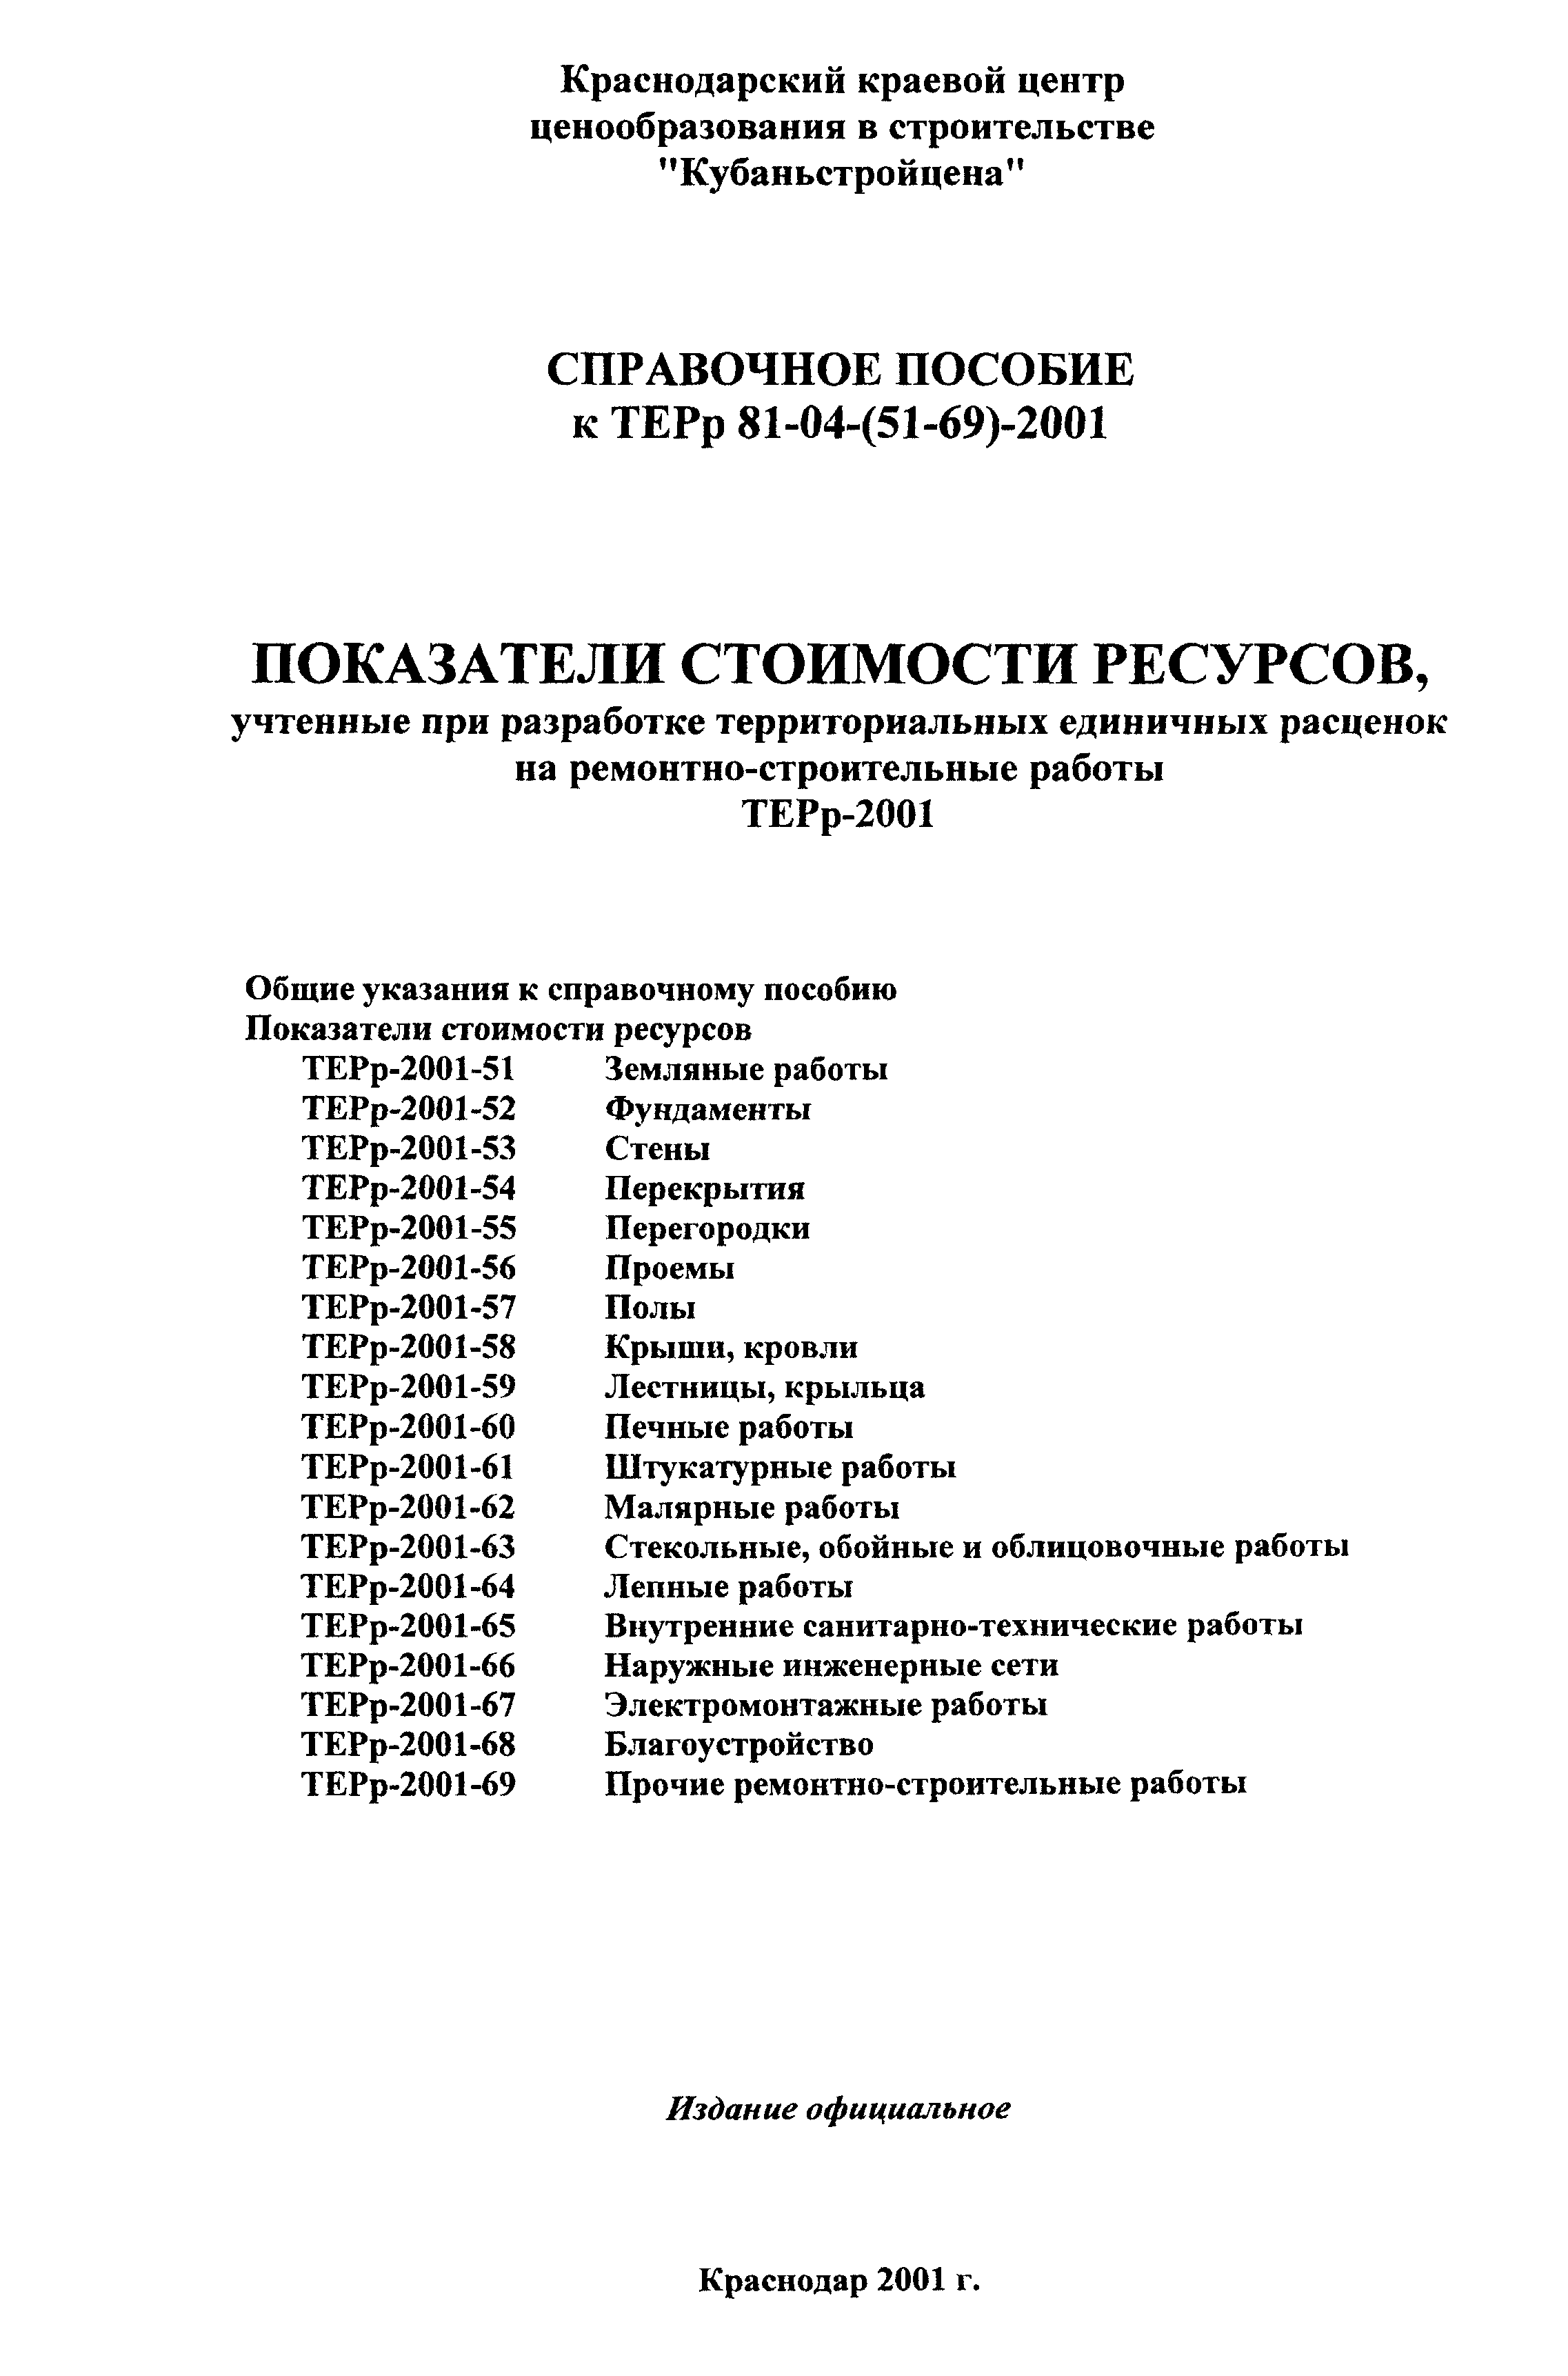 Справочное пособие к ТЕРр 81-04-59-2001